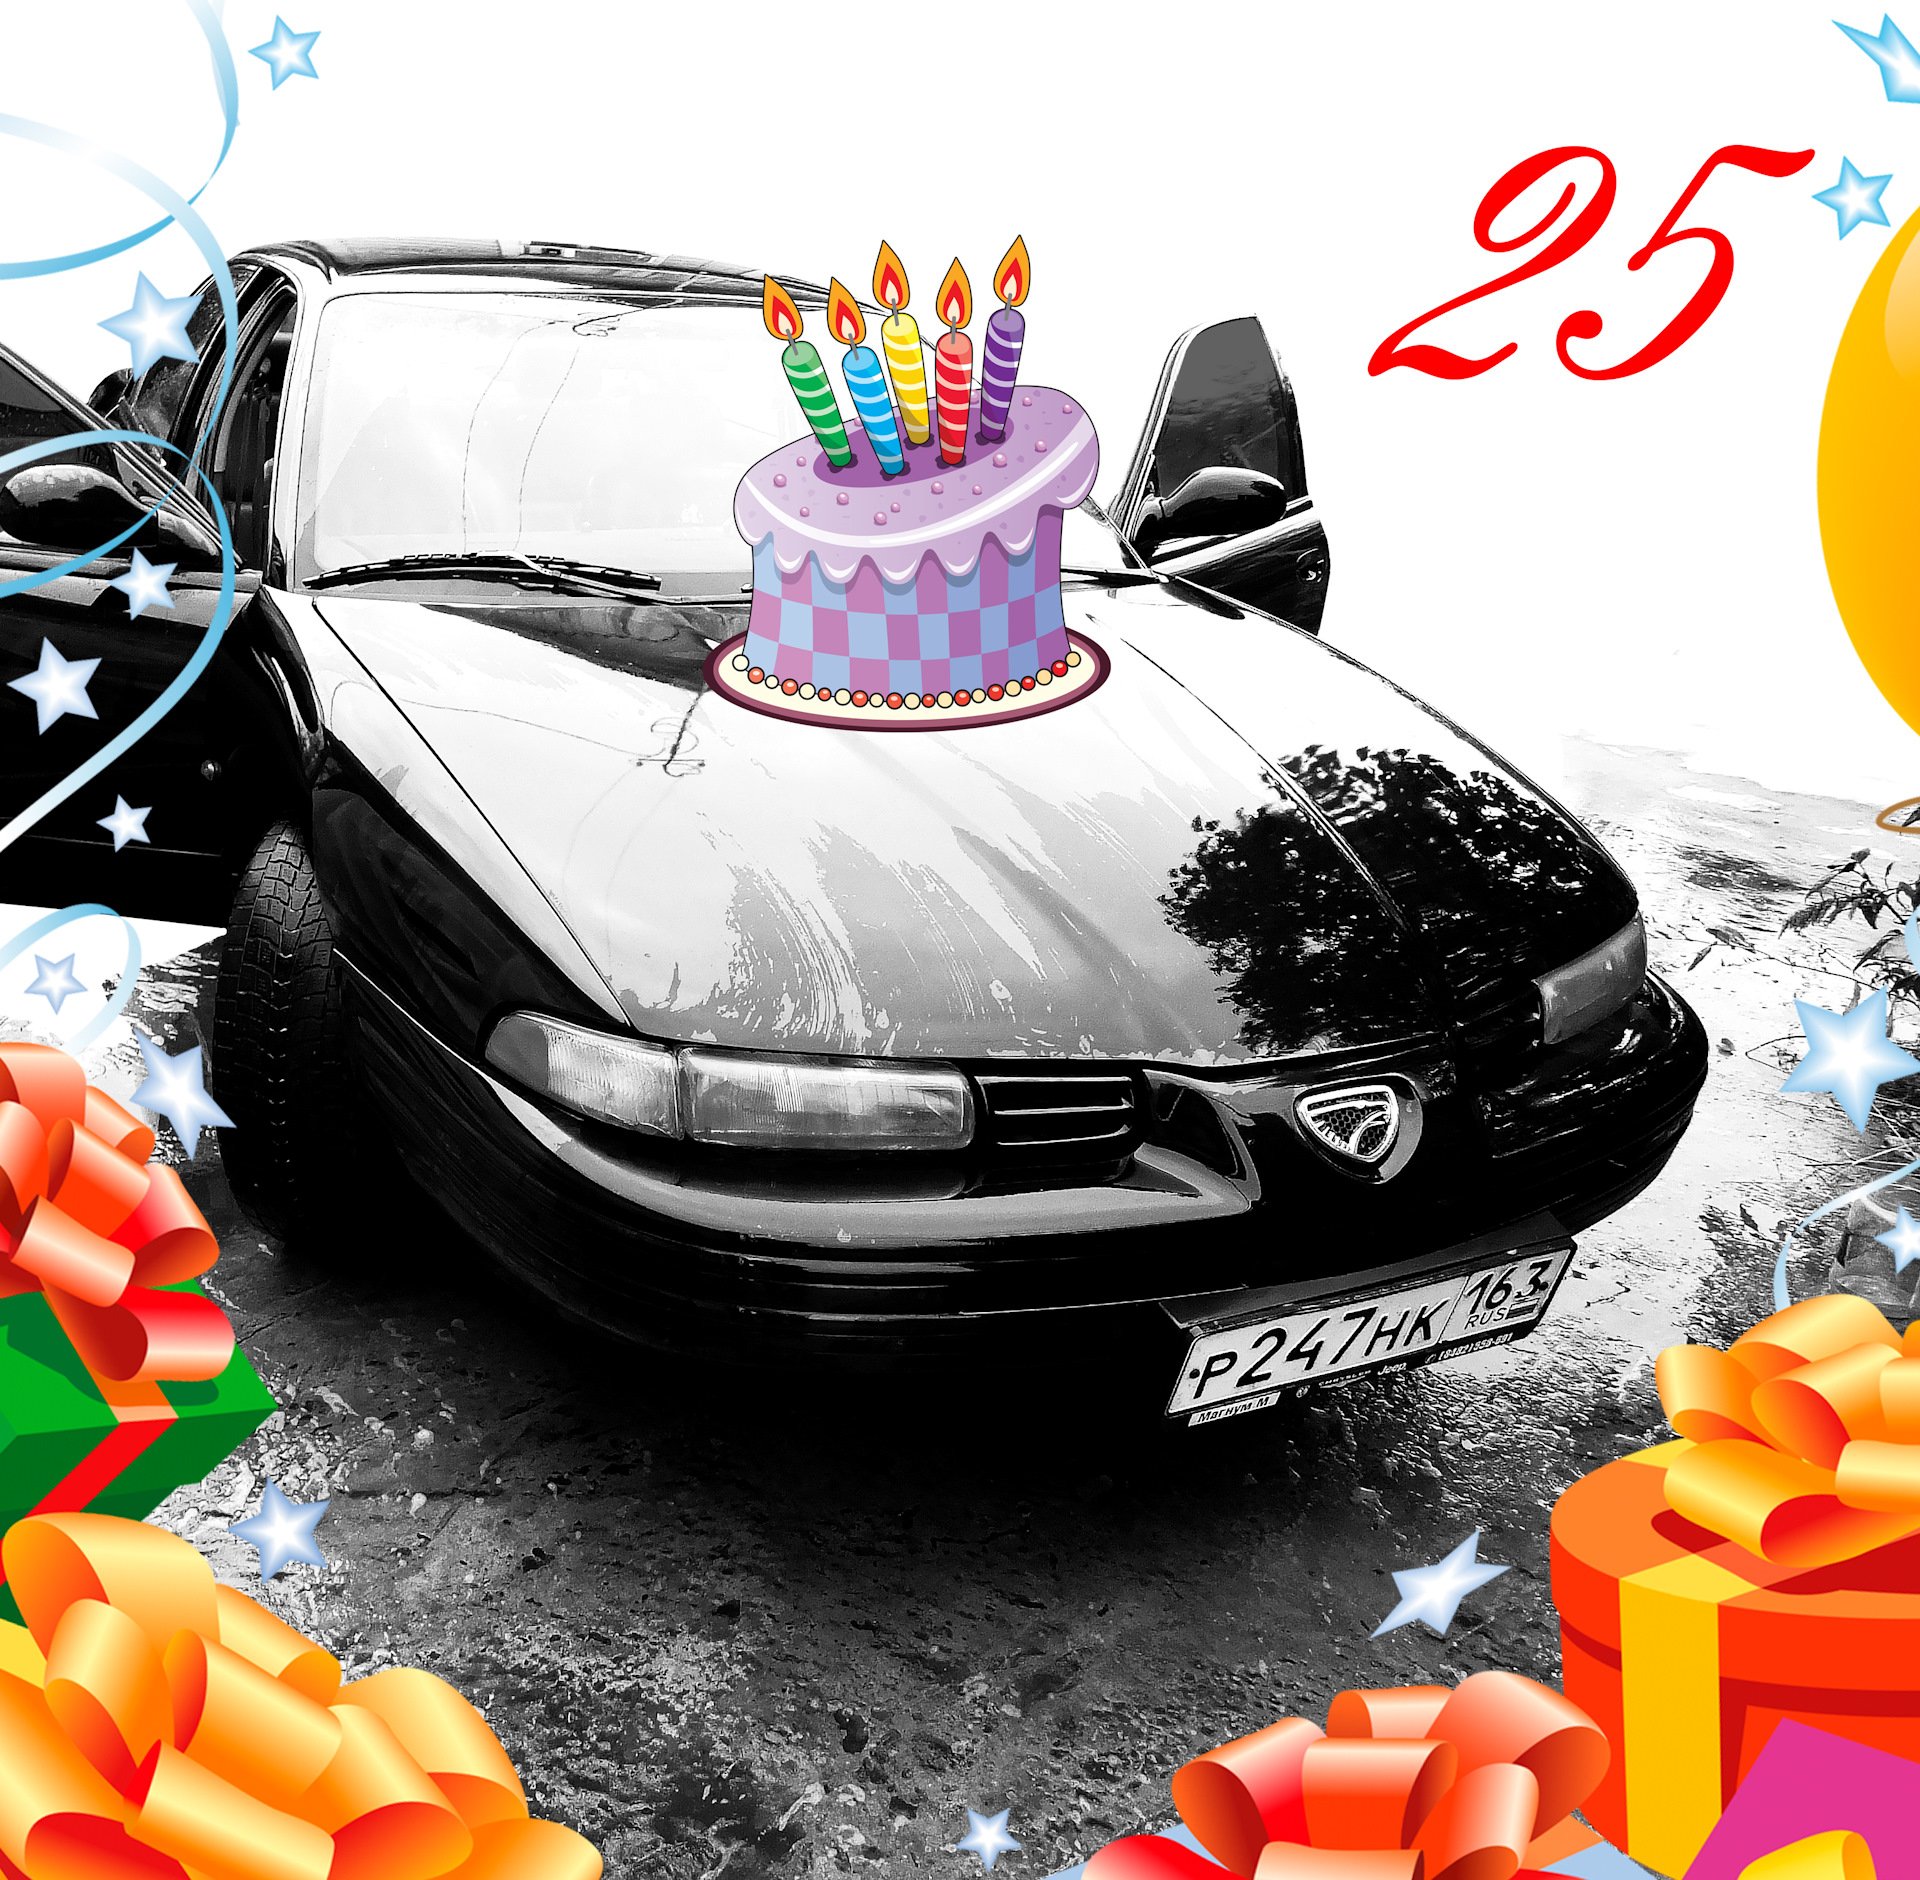 Открытка с днем рождения с автомобилем